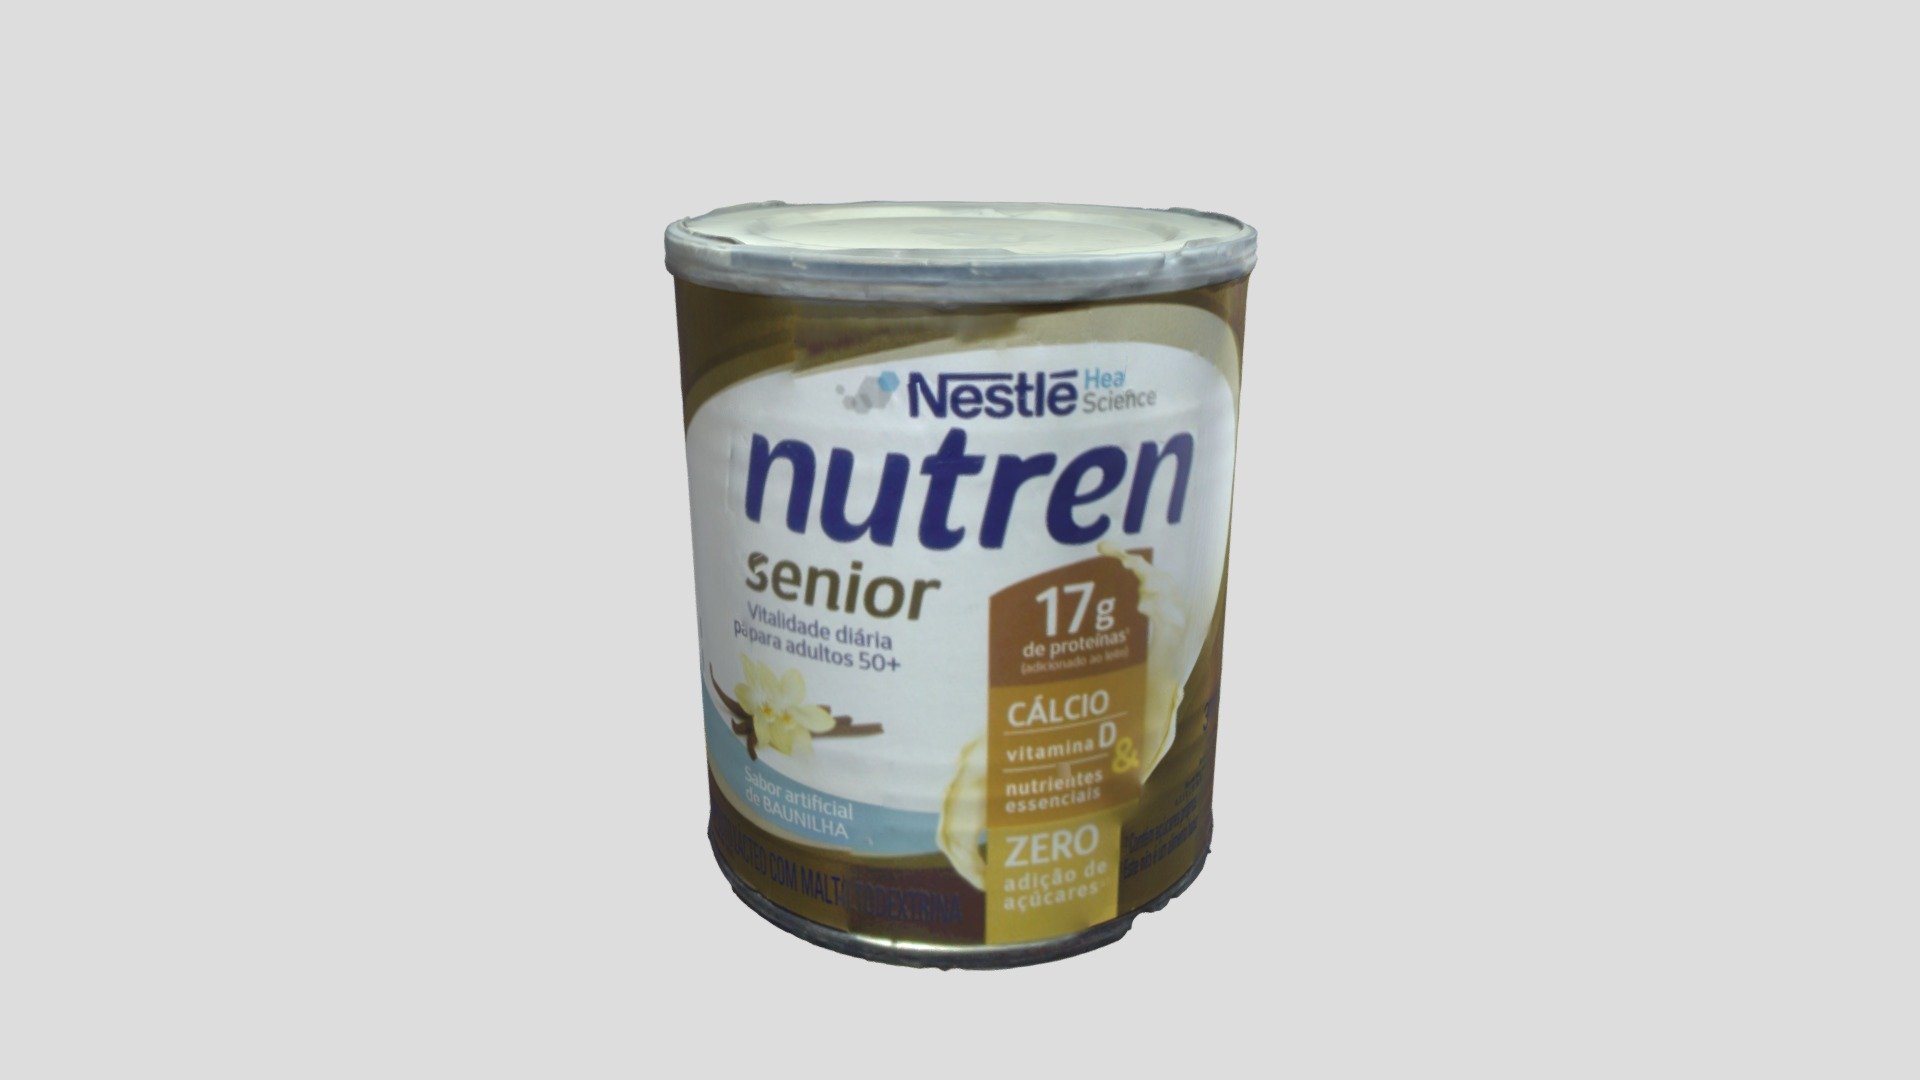 Nestle - (B) Nutren Senior - 3D model by 42LabsCS [8df5050